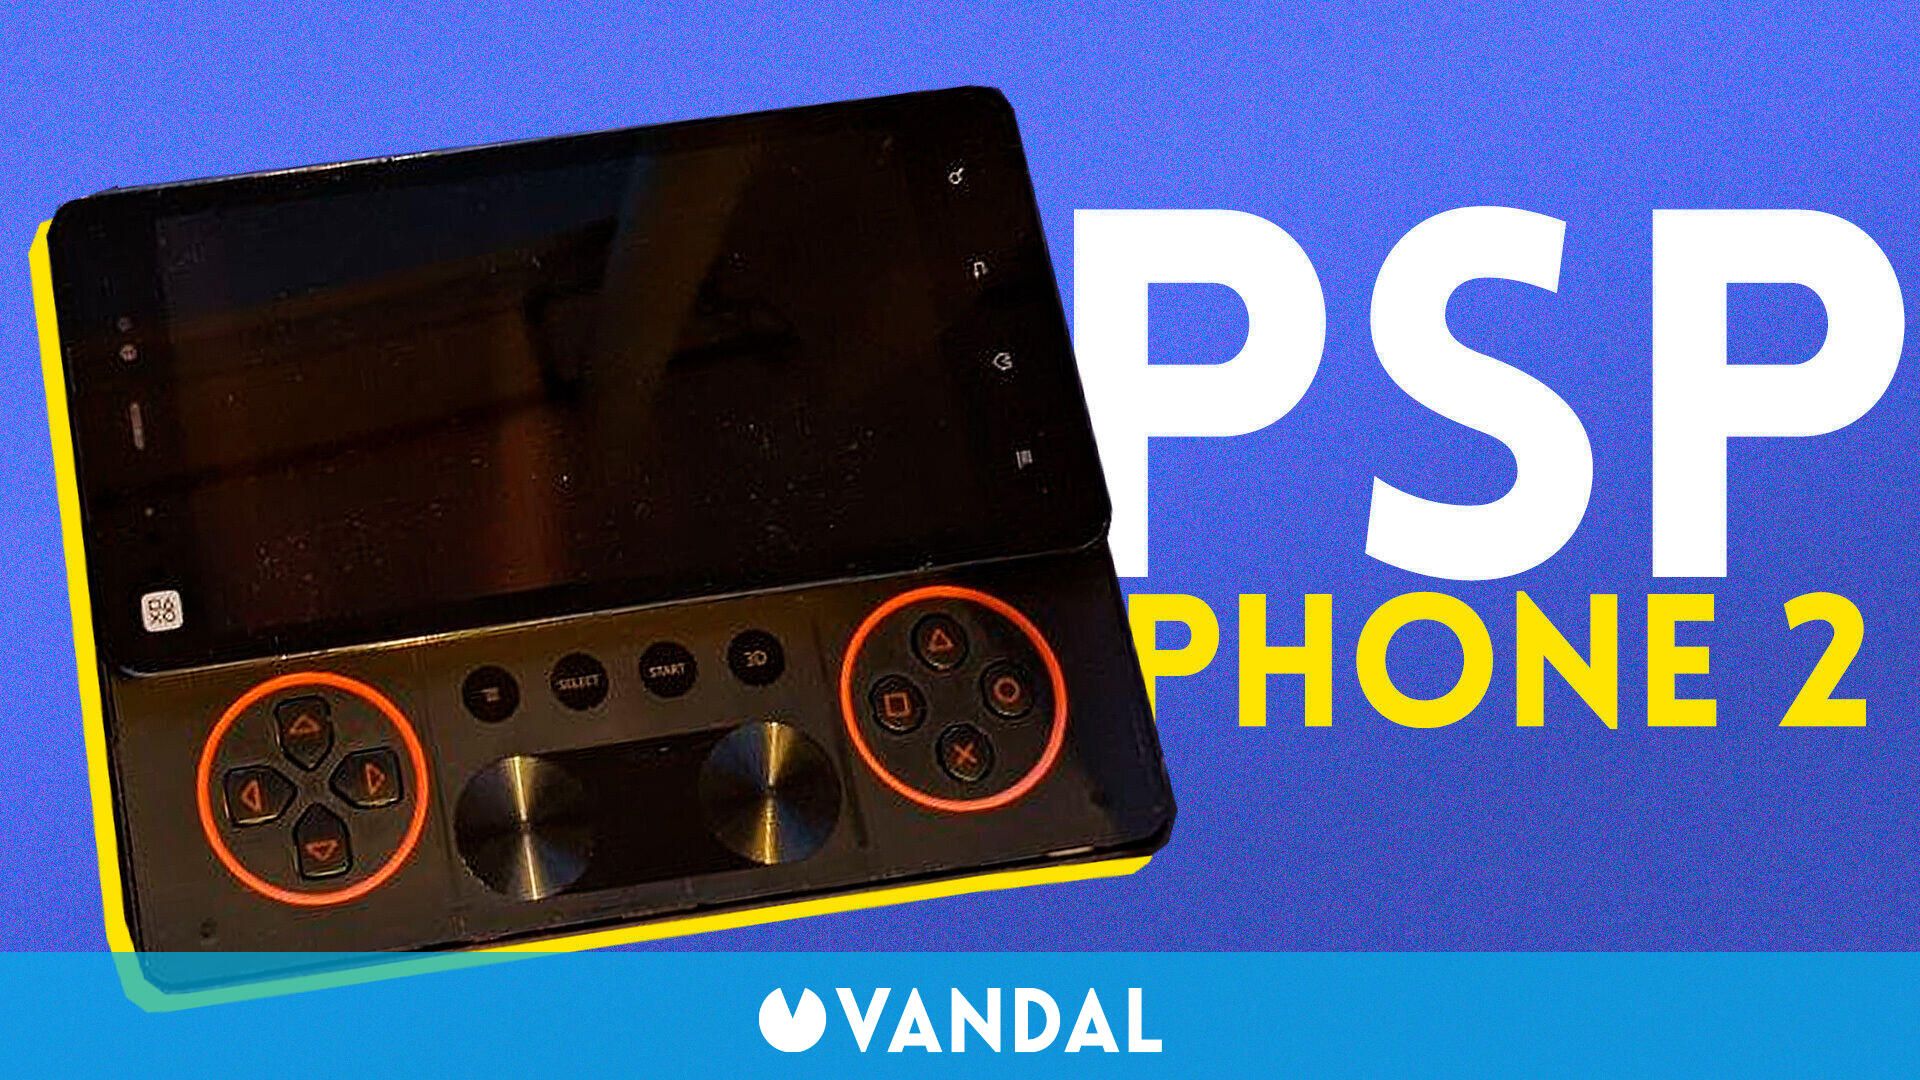 Dispersión Metro Elasticidad Descubren el PSP Phone 2, un dispositivo inédito de Sony que no llegó a  ponerse a la venta - Vandal